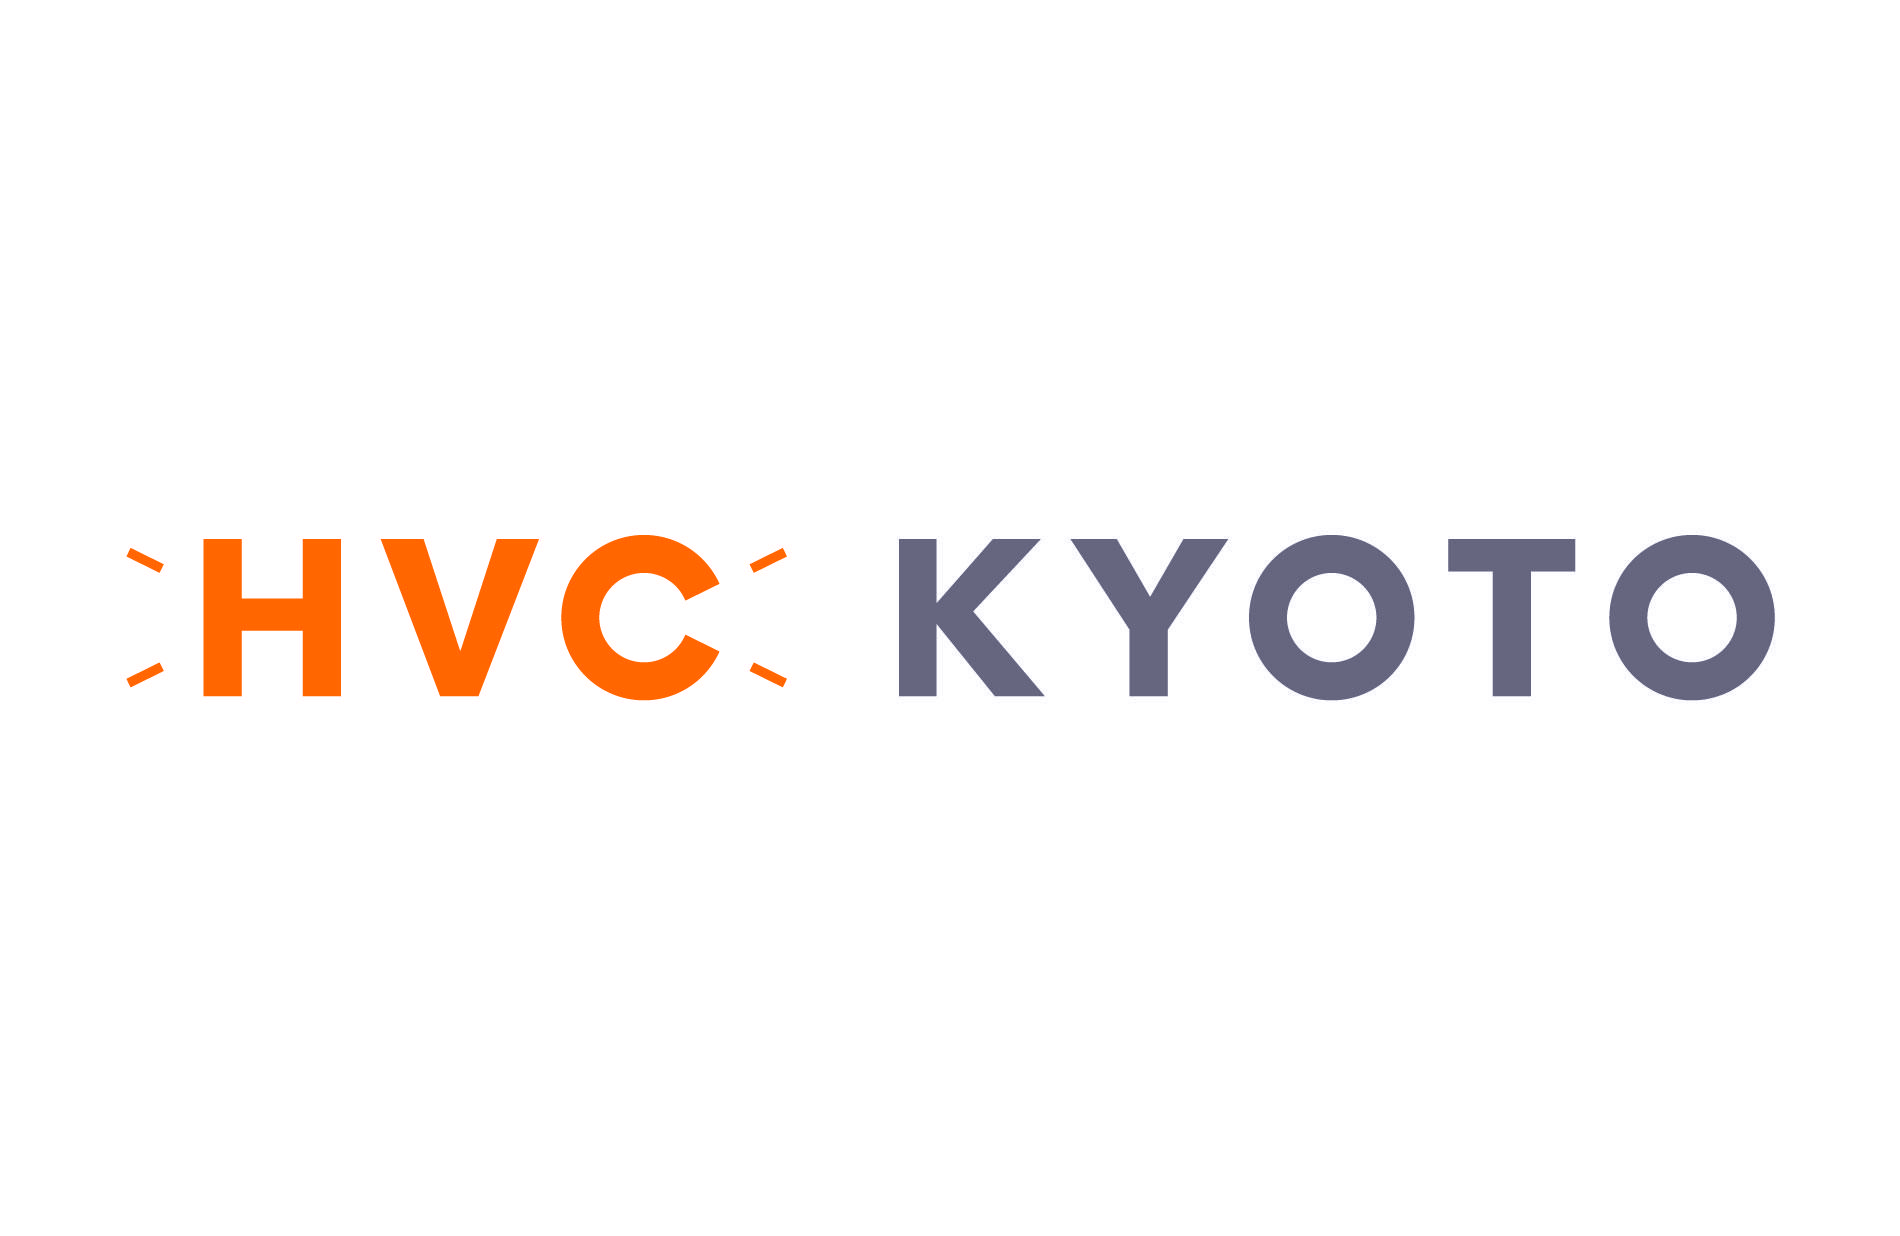 HVC KYOTO 2022 ピッチ登壇者・パートナー企業 募集開始